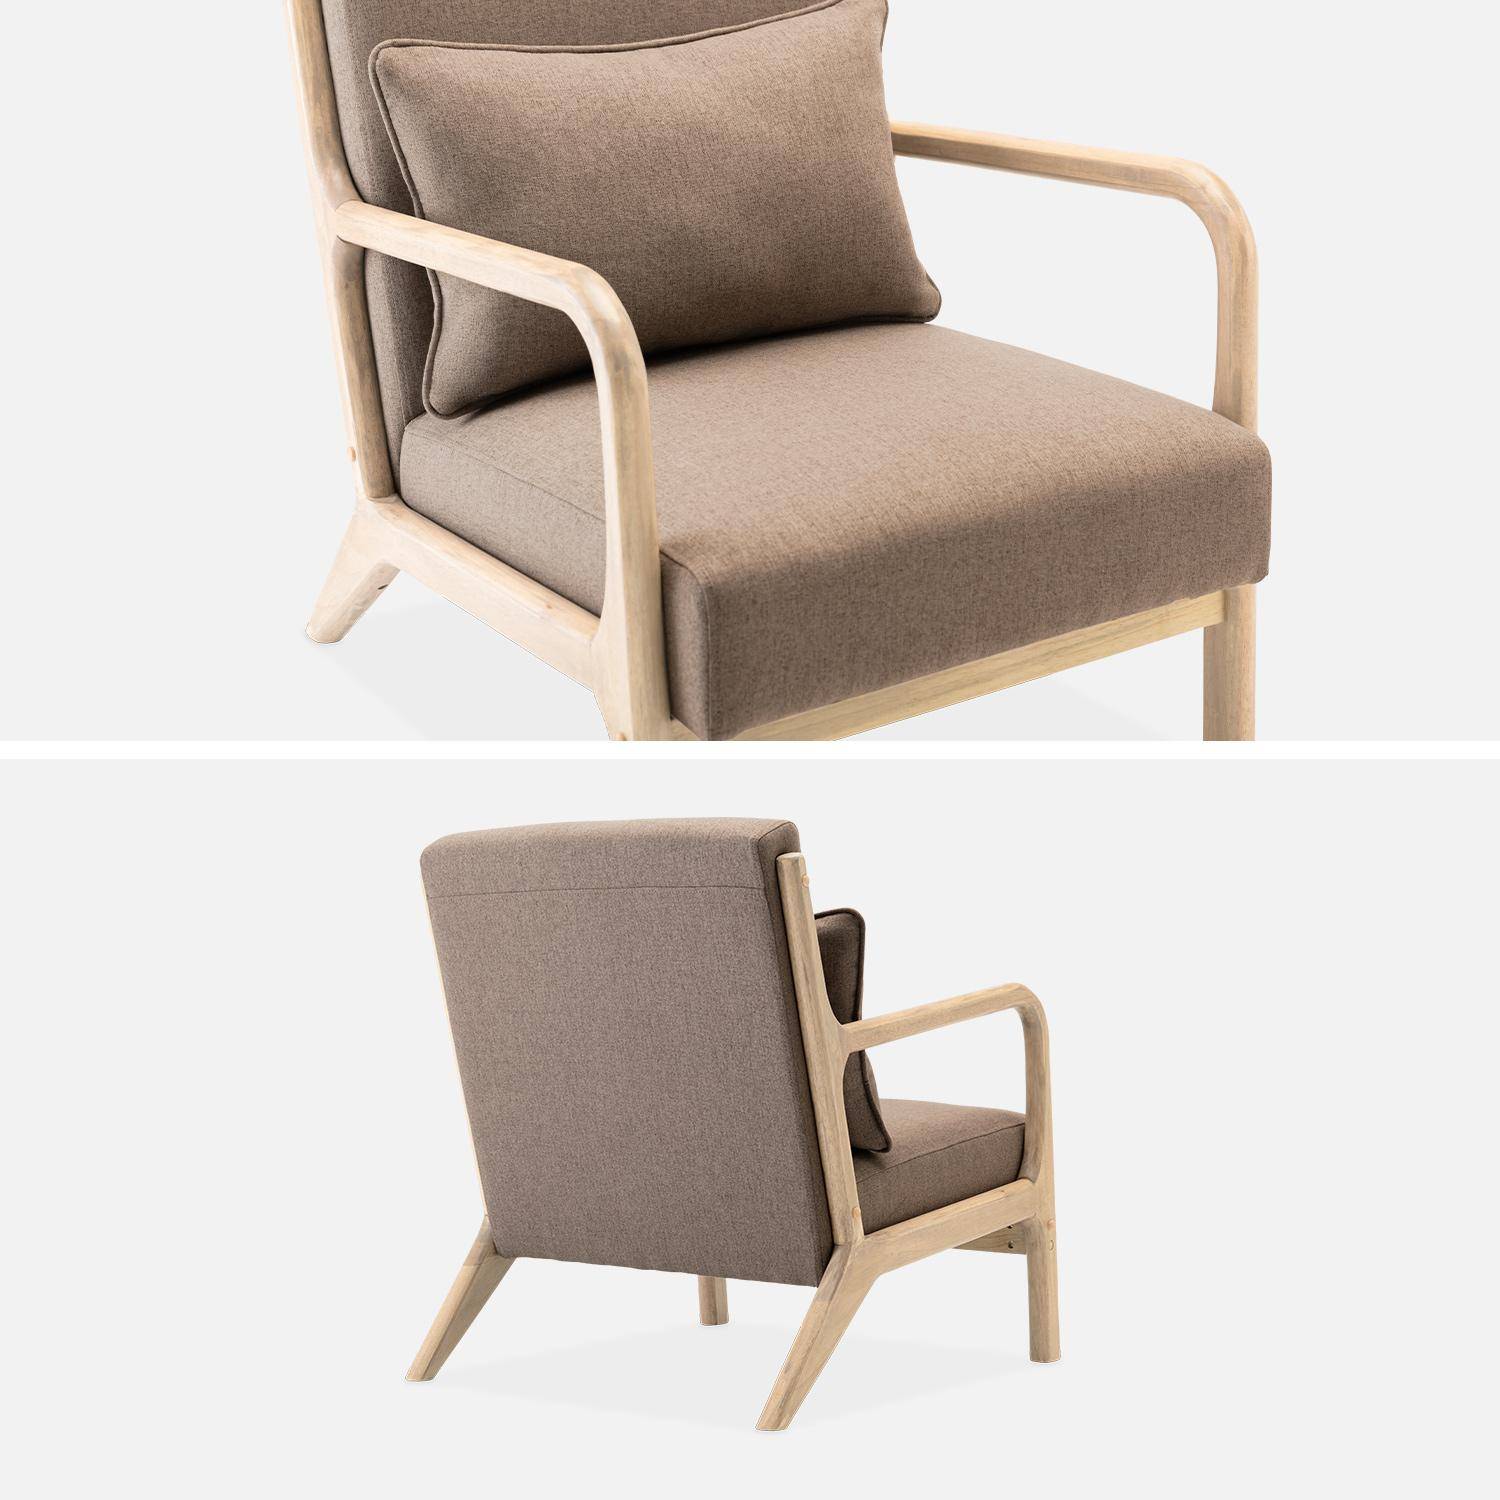 Sillón de diseño marrón en madera y tela, 1 asiento recto fijo, patas de compás escandinavas, armazón de madera maciza, asiento cómodo,sweeek,Photo6